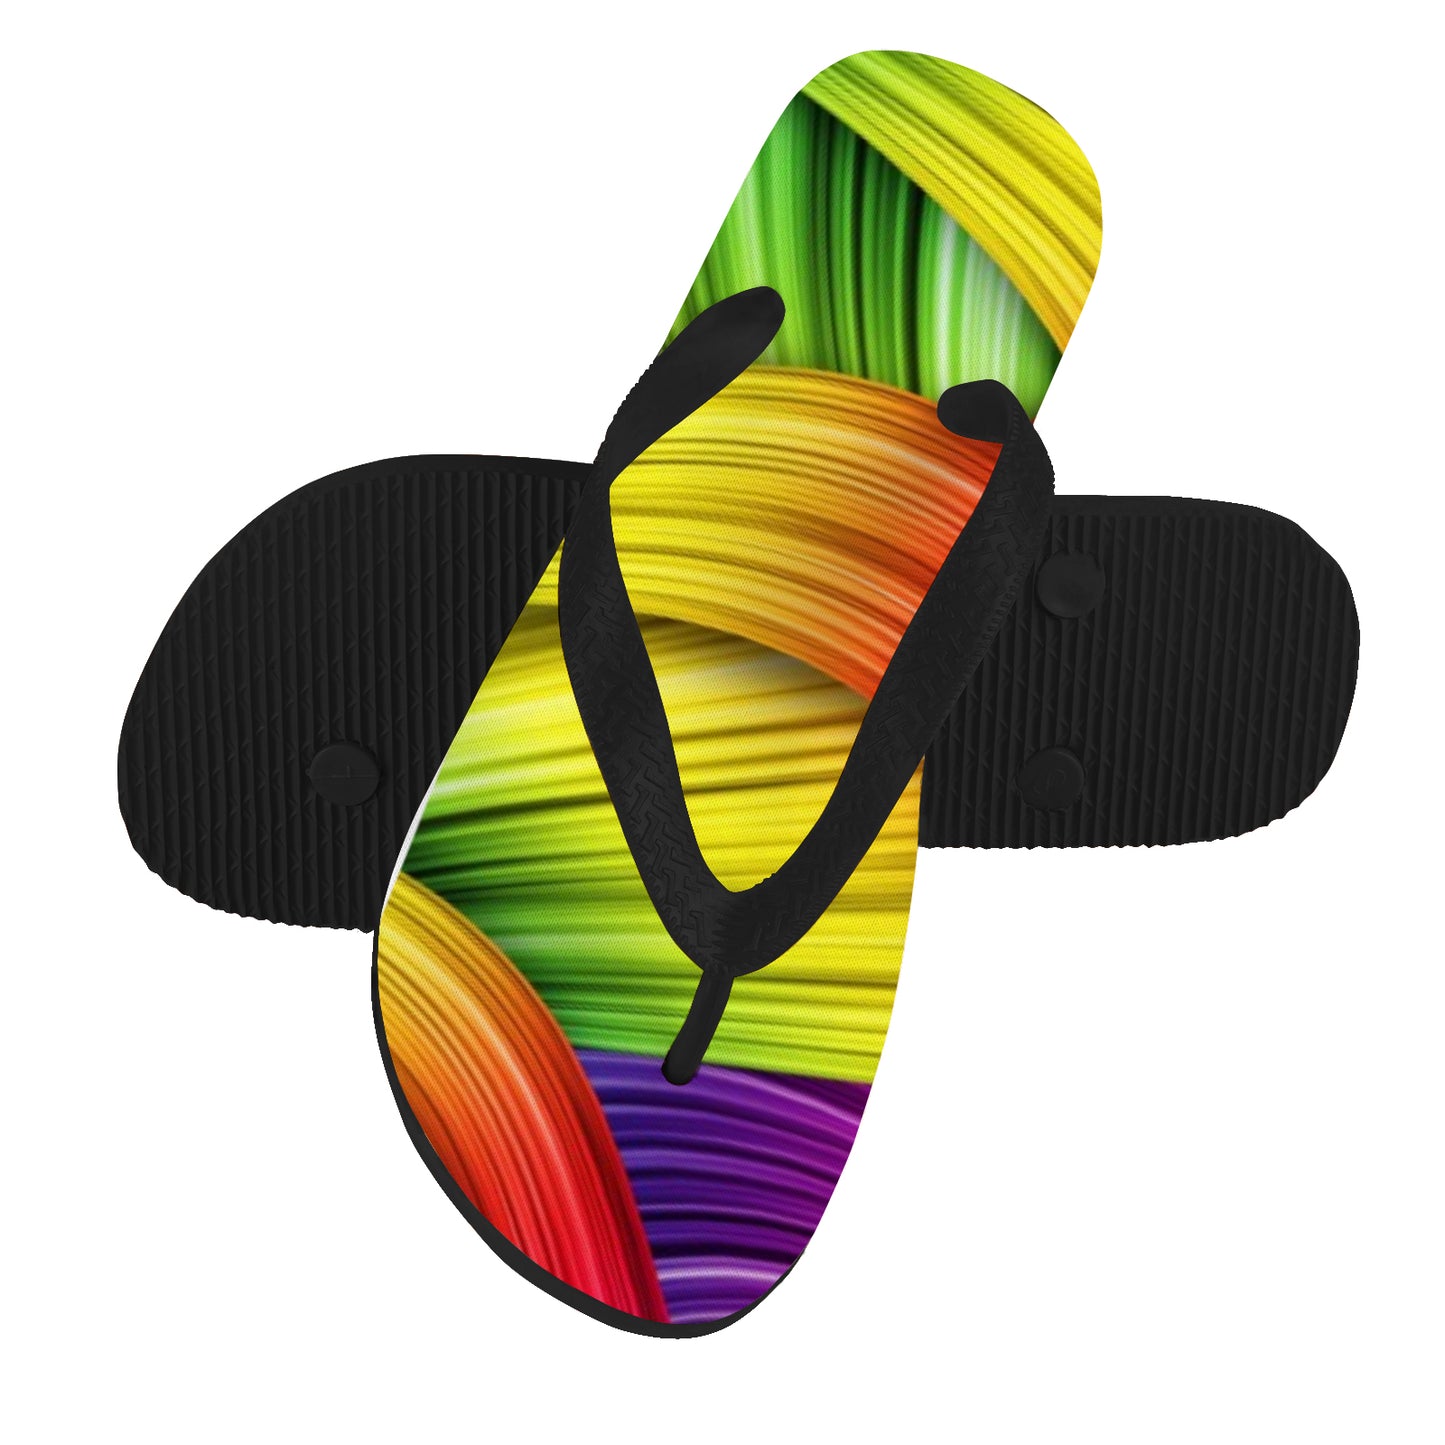 Slides - Colorful Ribbon